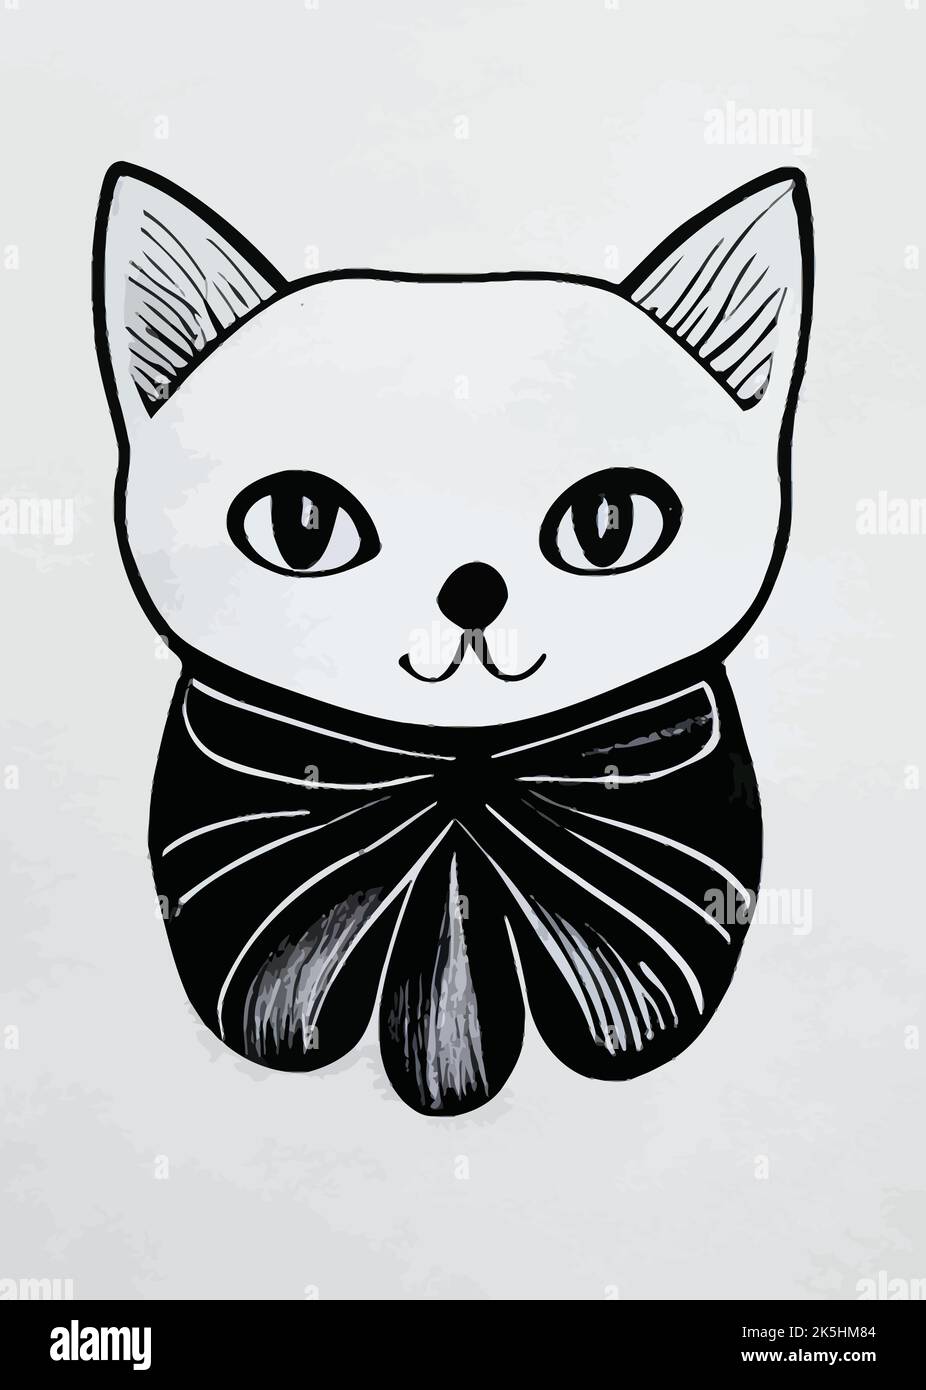 Dessin noir d'un chat avec une jolie face isolée sur un fond Uni Illustration de Vecteur